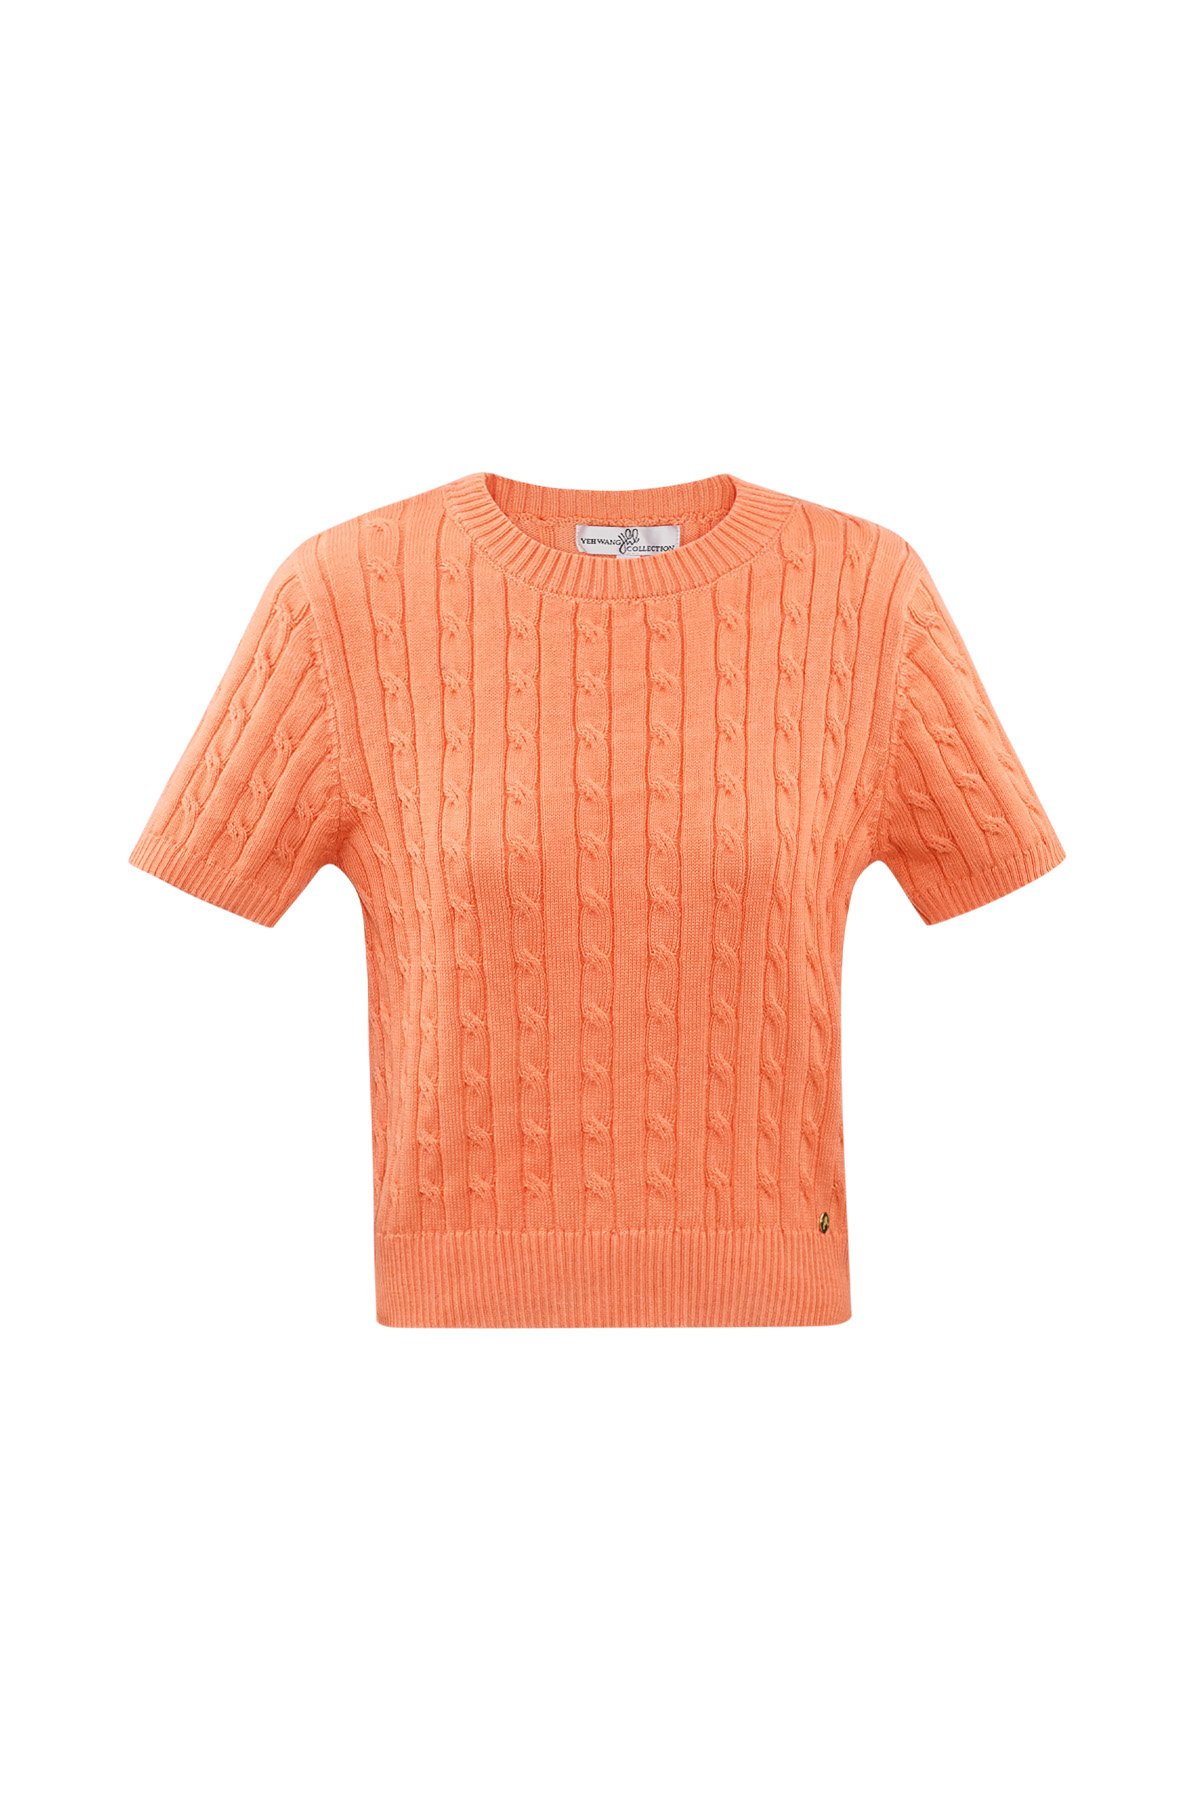 Jersey de punto con trenzas y manga corta pequeño/mediano – naranja